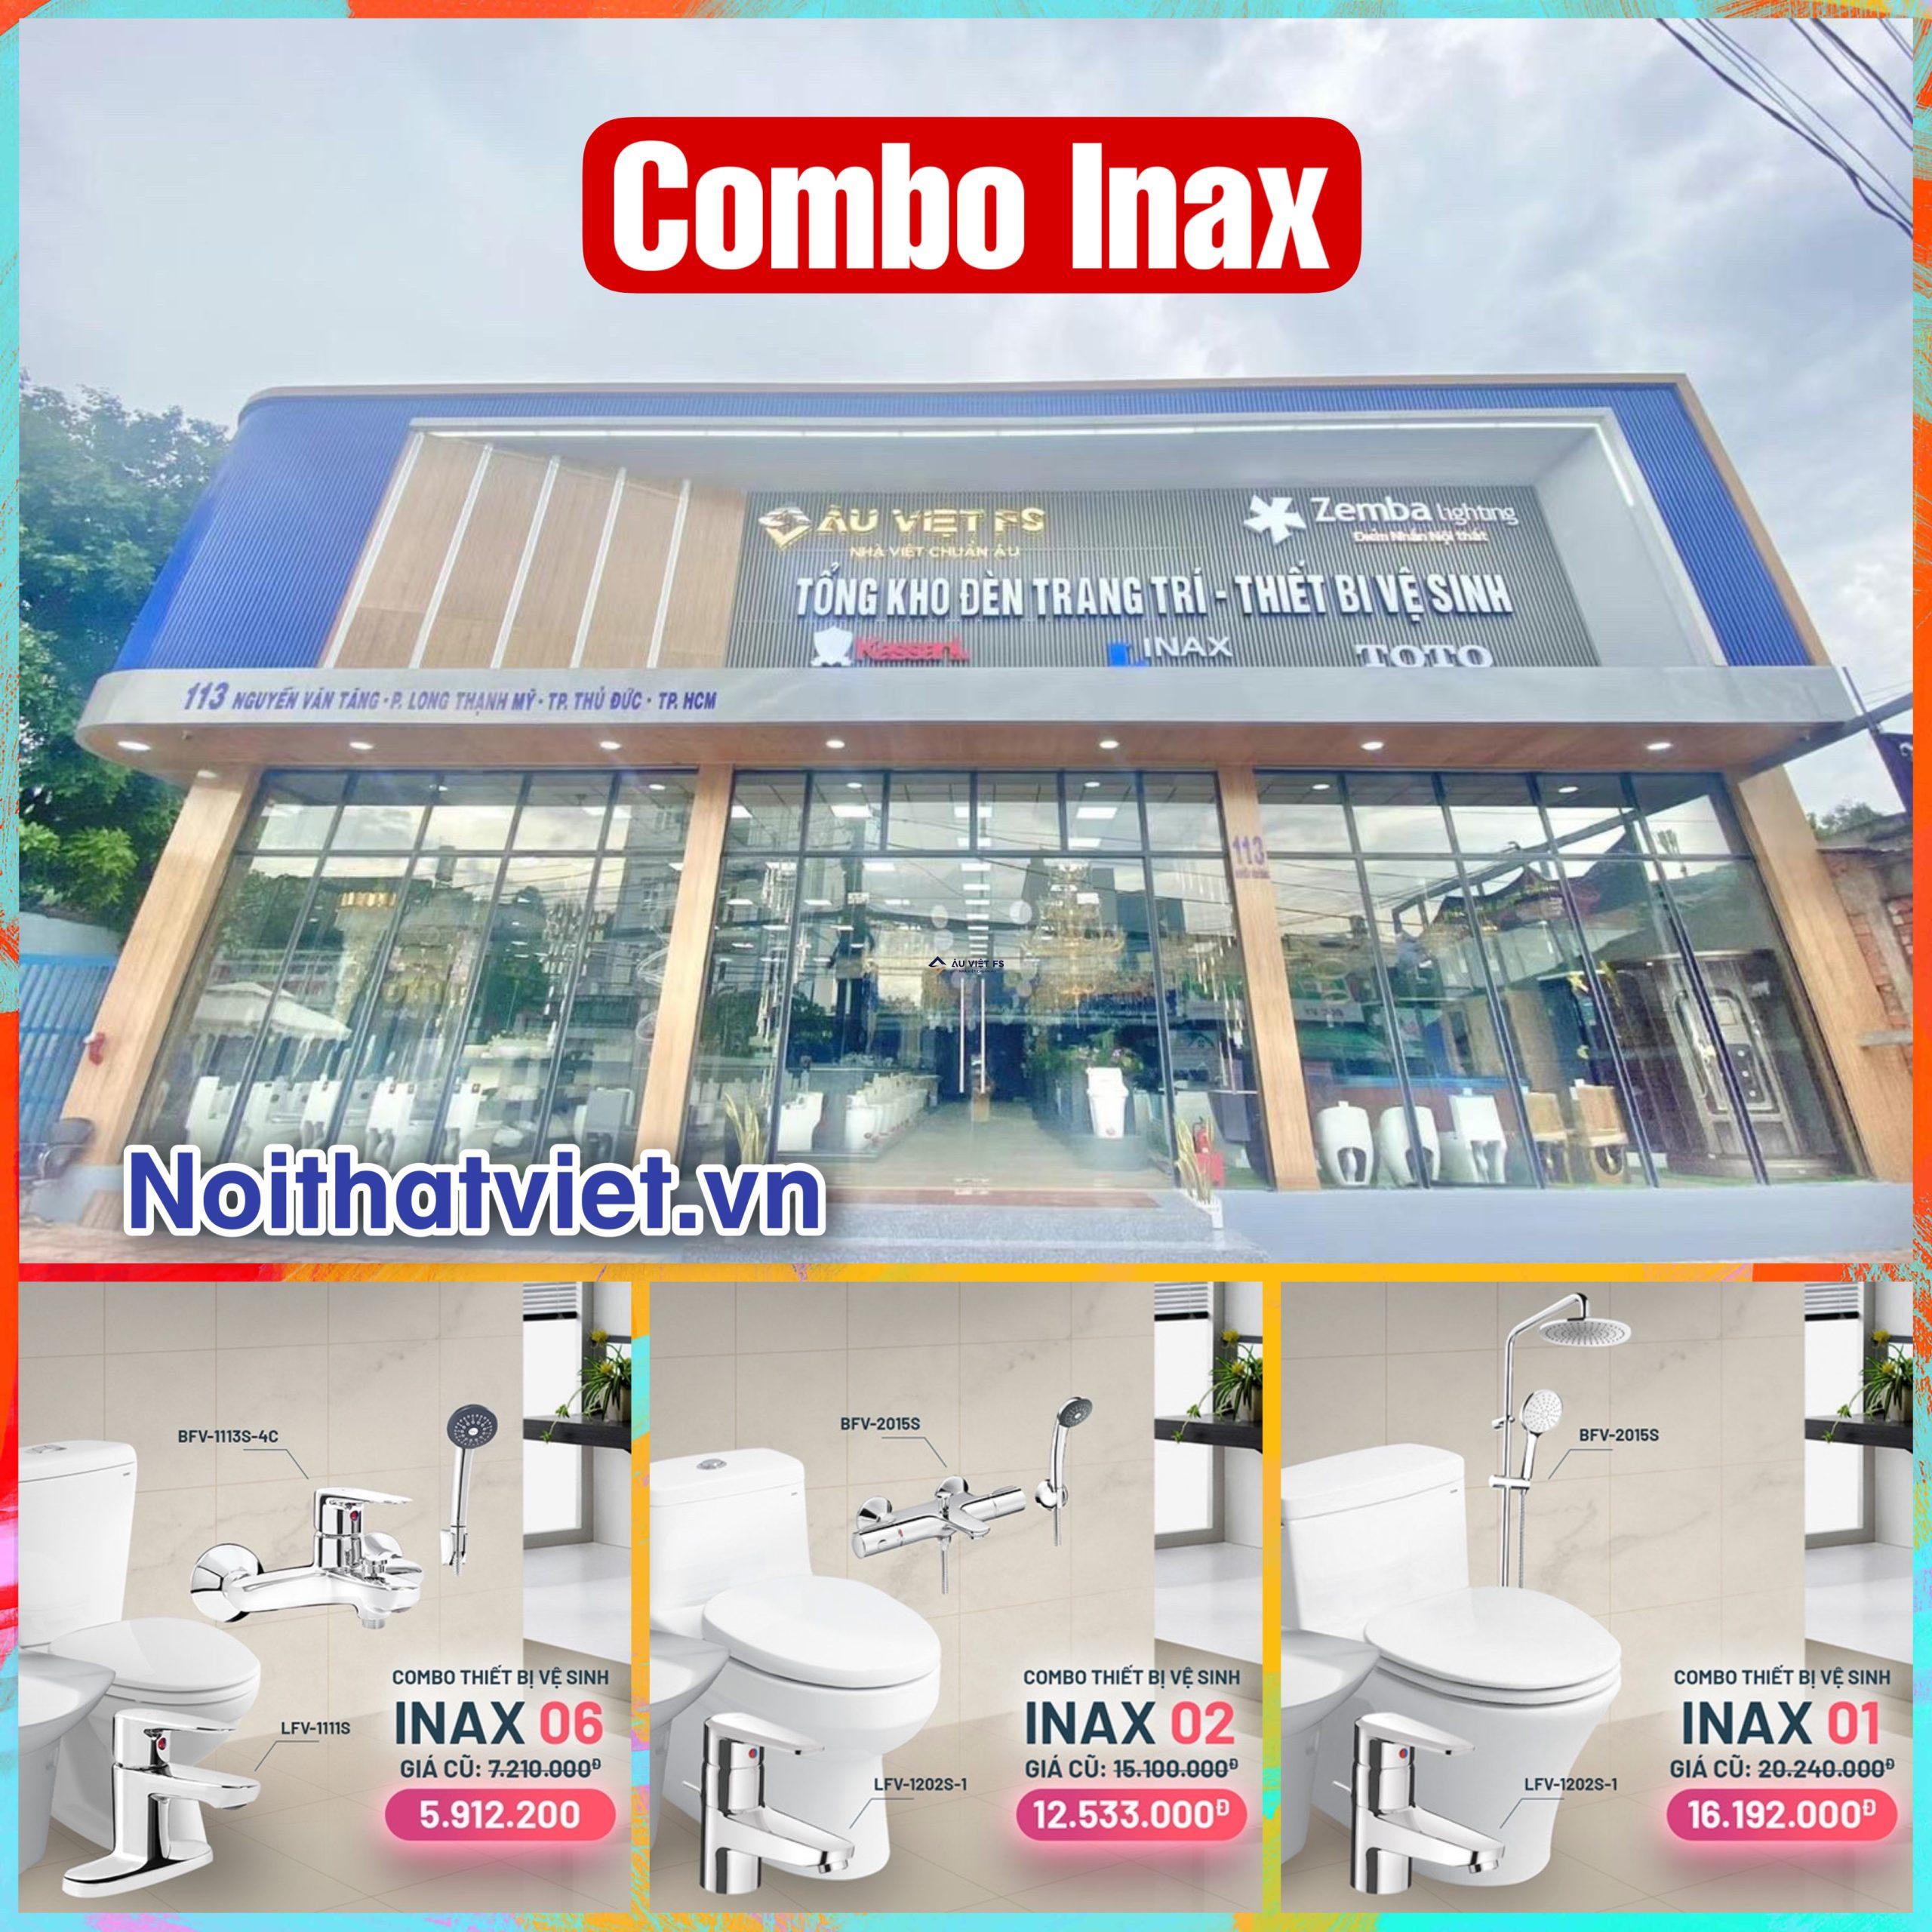 Combo thiết bị vệ sinh Inax cho nhà hàng khách sạn 2023 2024, Inax, Combo Inax, Thiết bị vệ sinh Inax, Combo thiết bị vệ sinh Inax, Combo Inax, GIá Inax